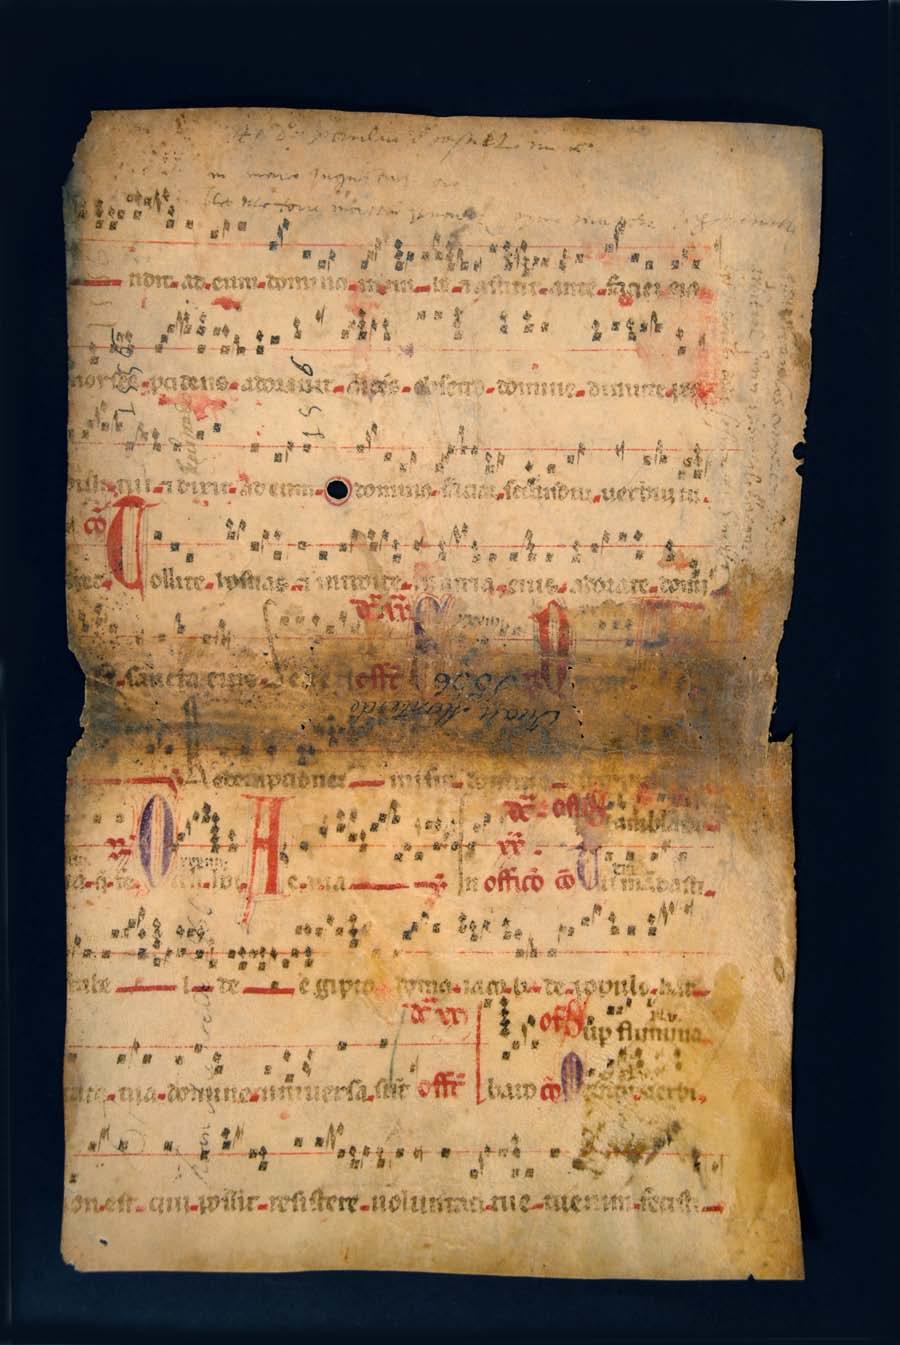 FRAGMENTOS LITÚRGICO-MUSICALES (SIGLOS XIII-XVI) EN EL ARCHIVO HISTÓRICO NOTARIAL DE DAROCA